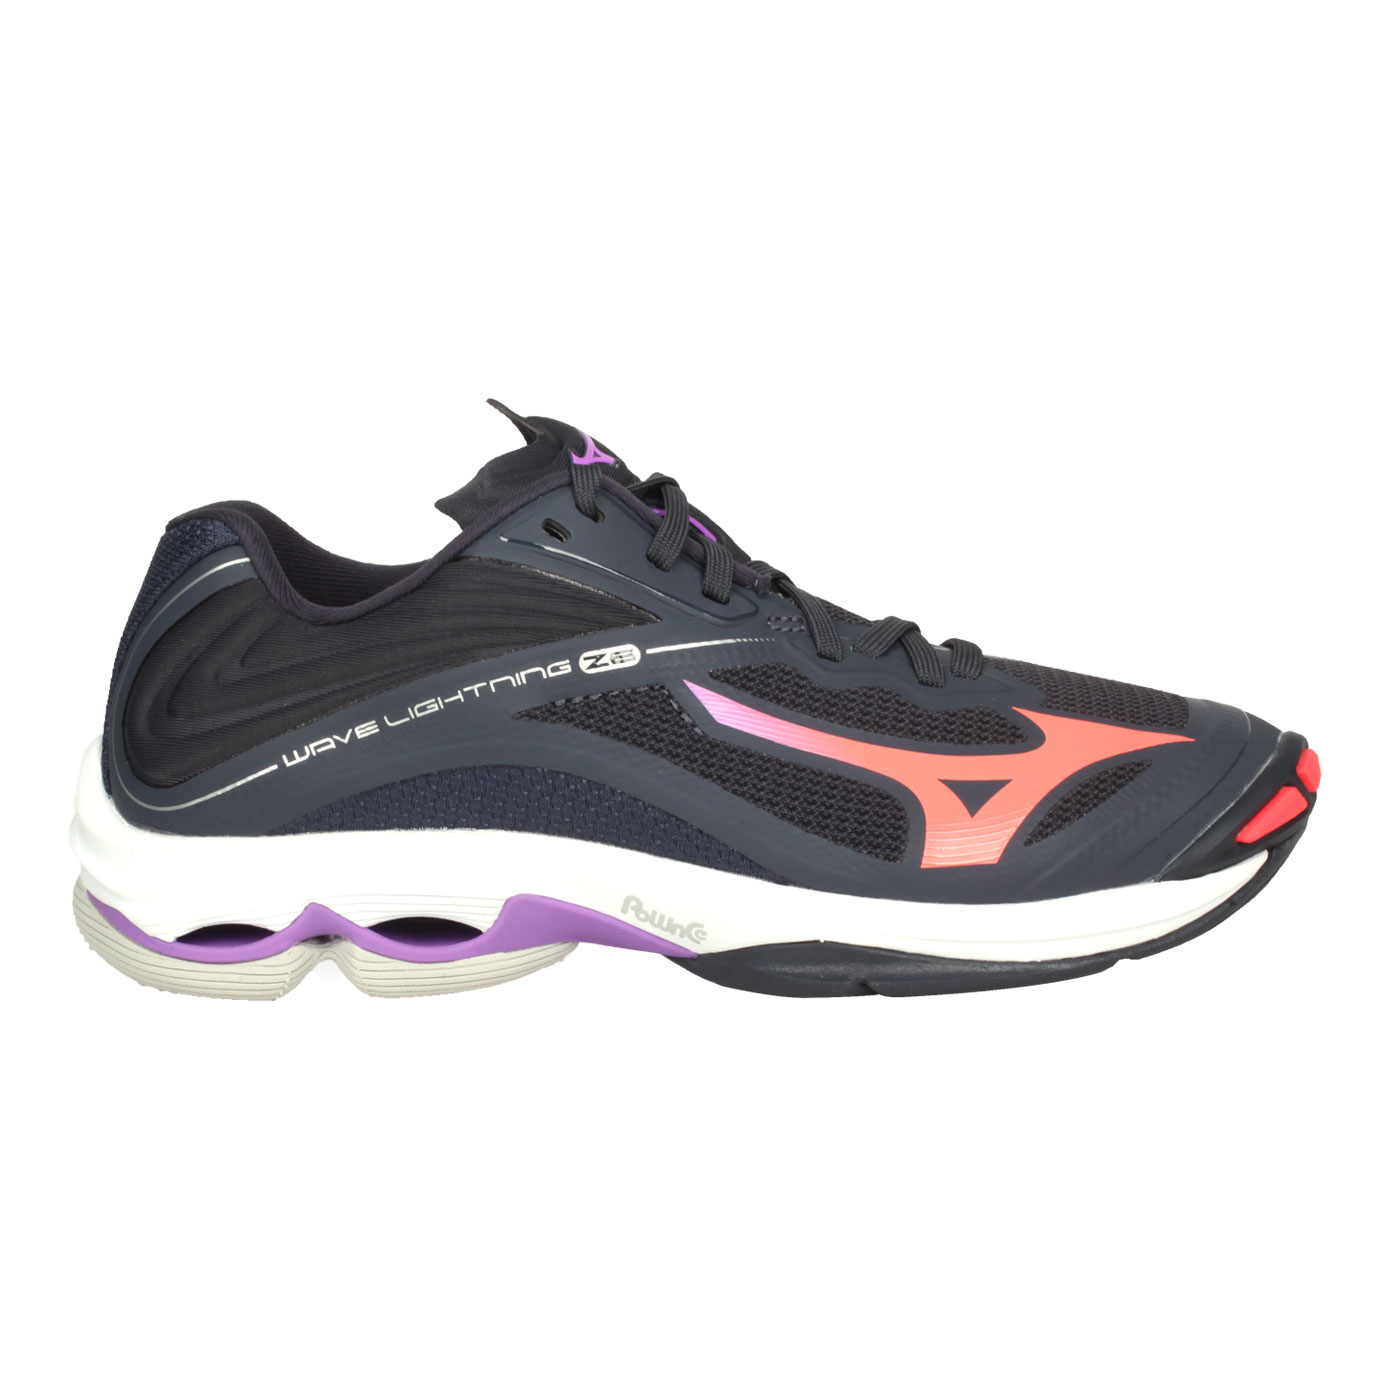 MIZUNO 女款排球鞋  @WAVE LIGHTNING Z6@V1GC200066 - 灰黑粉橘紫